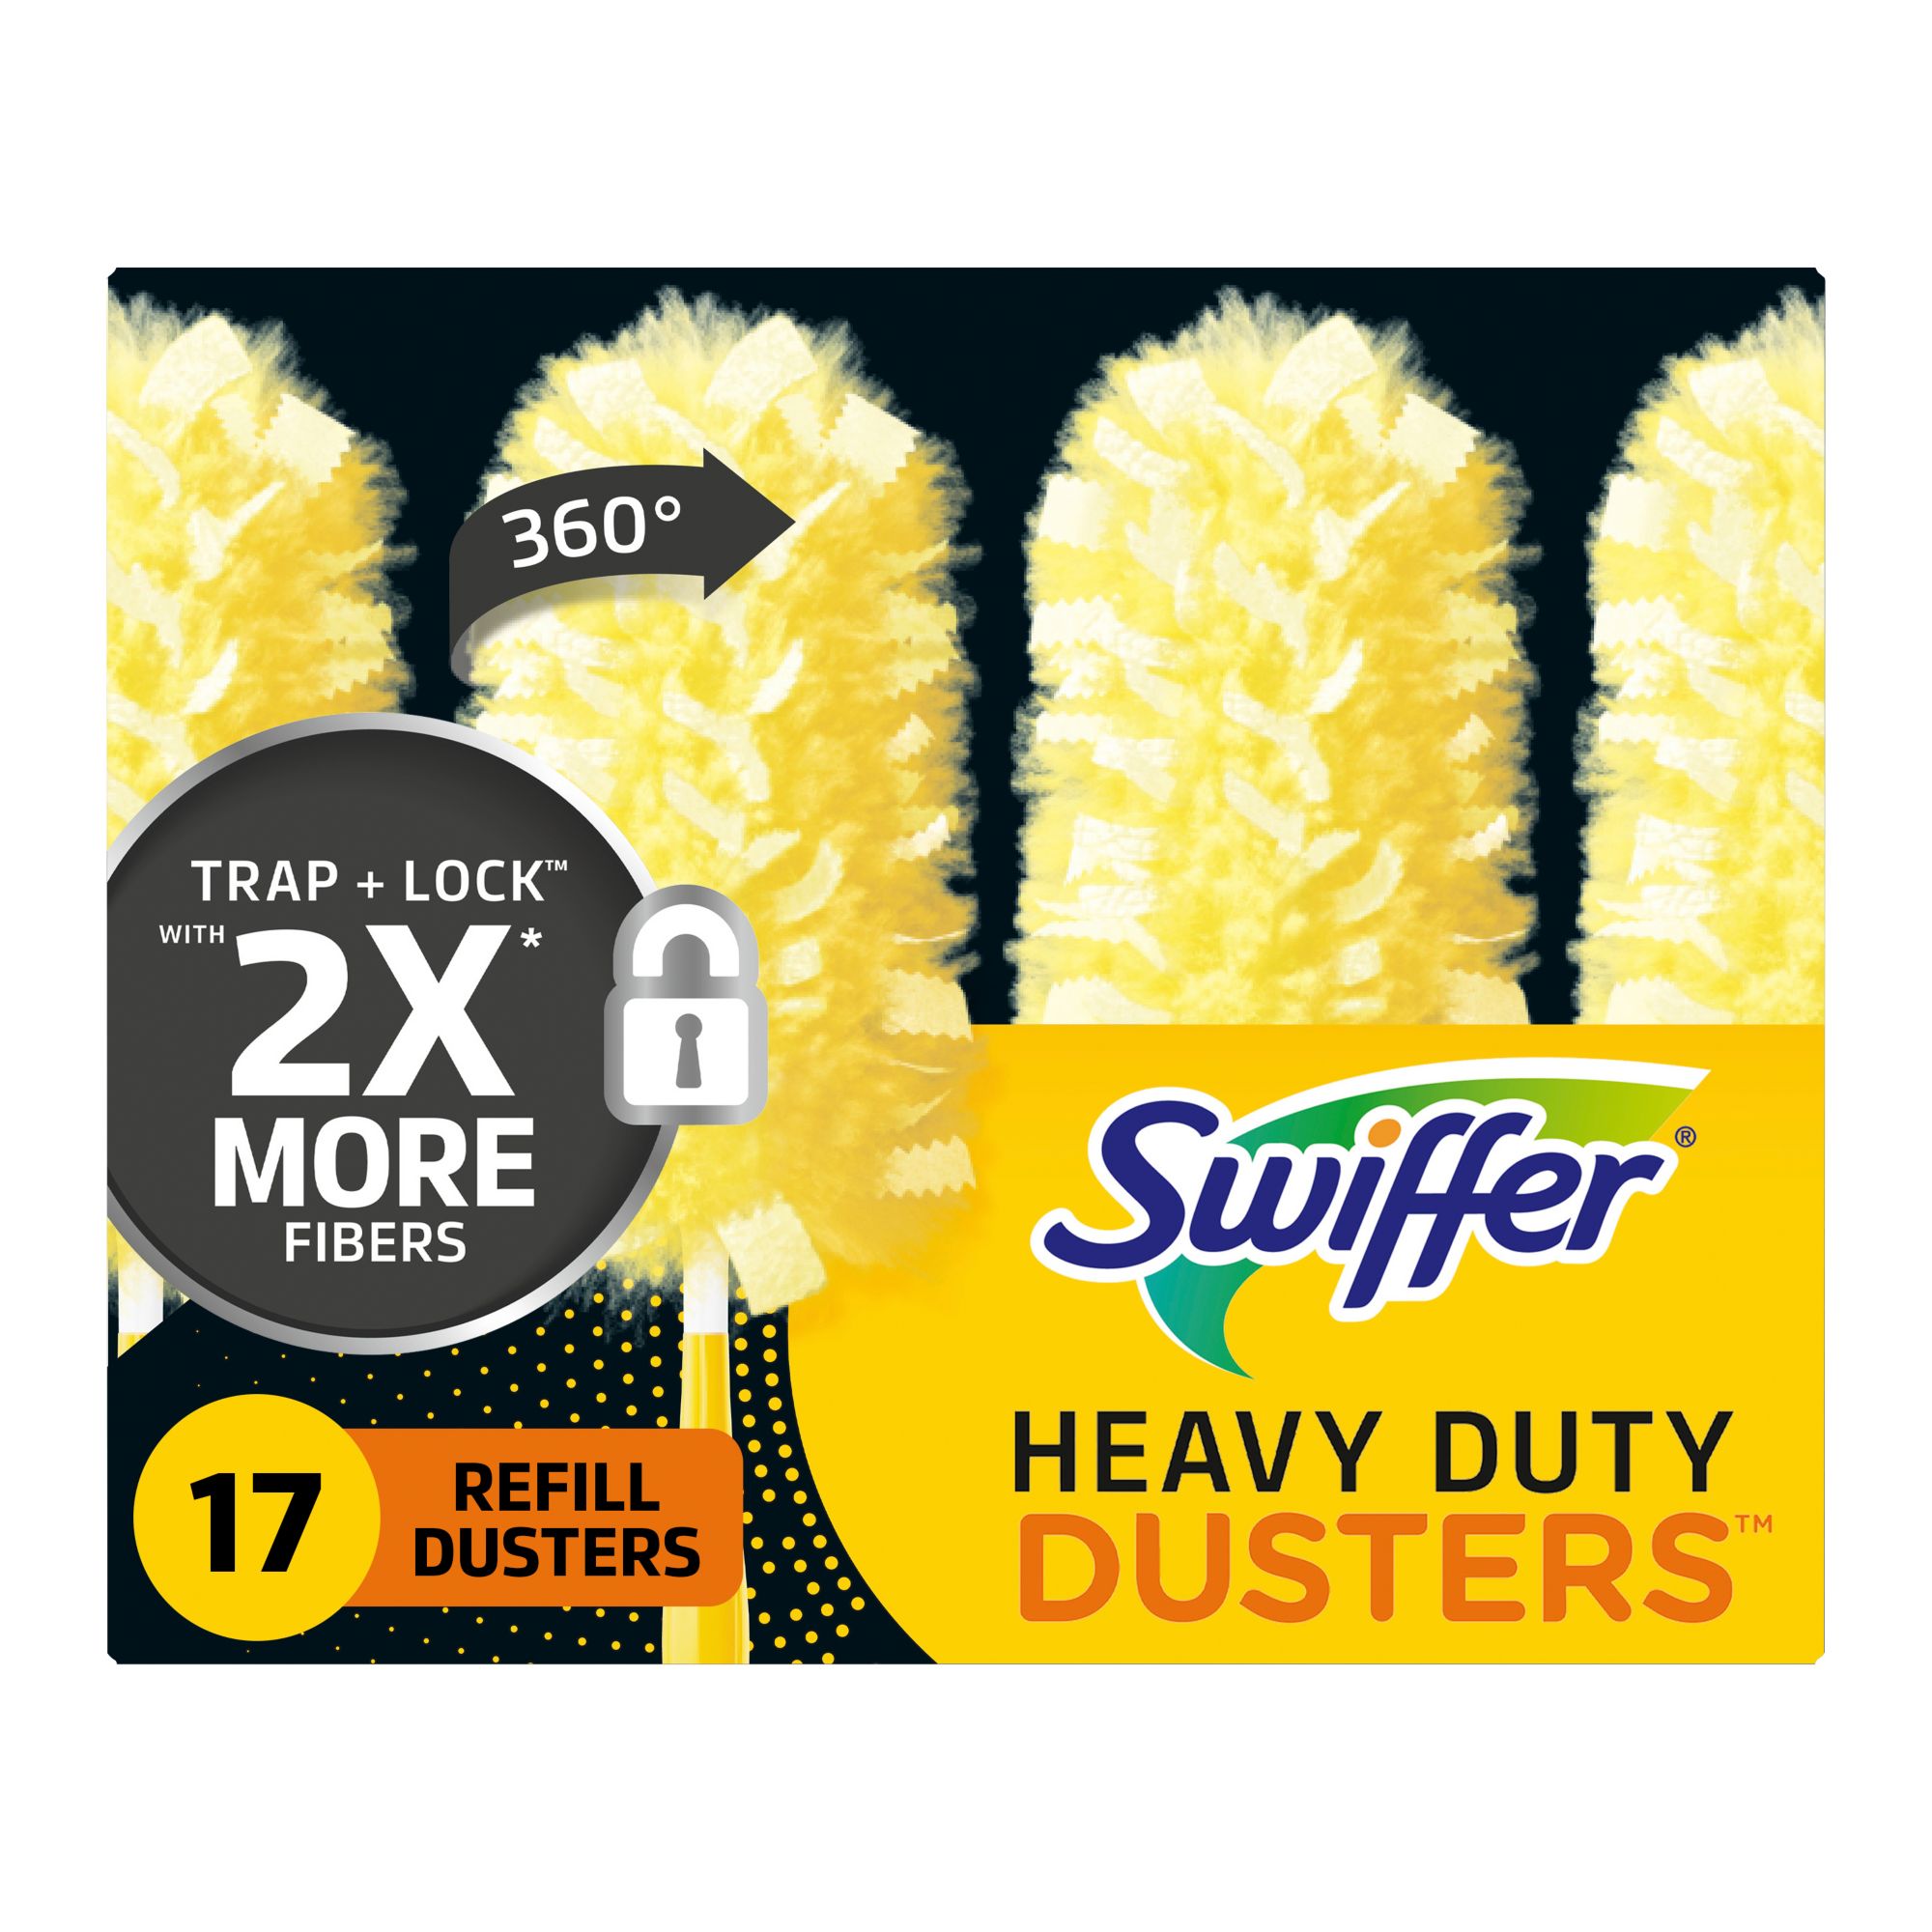 Swiffer® Dusters™ Heavy Duty 6 ft Super Extender